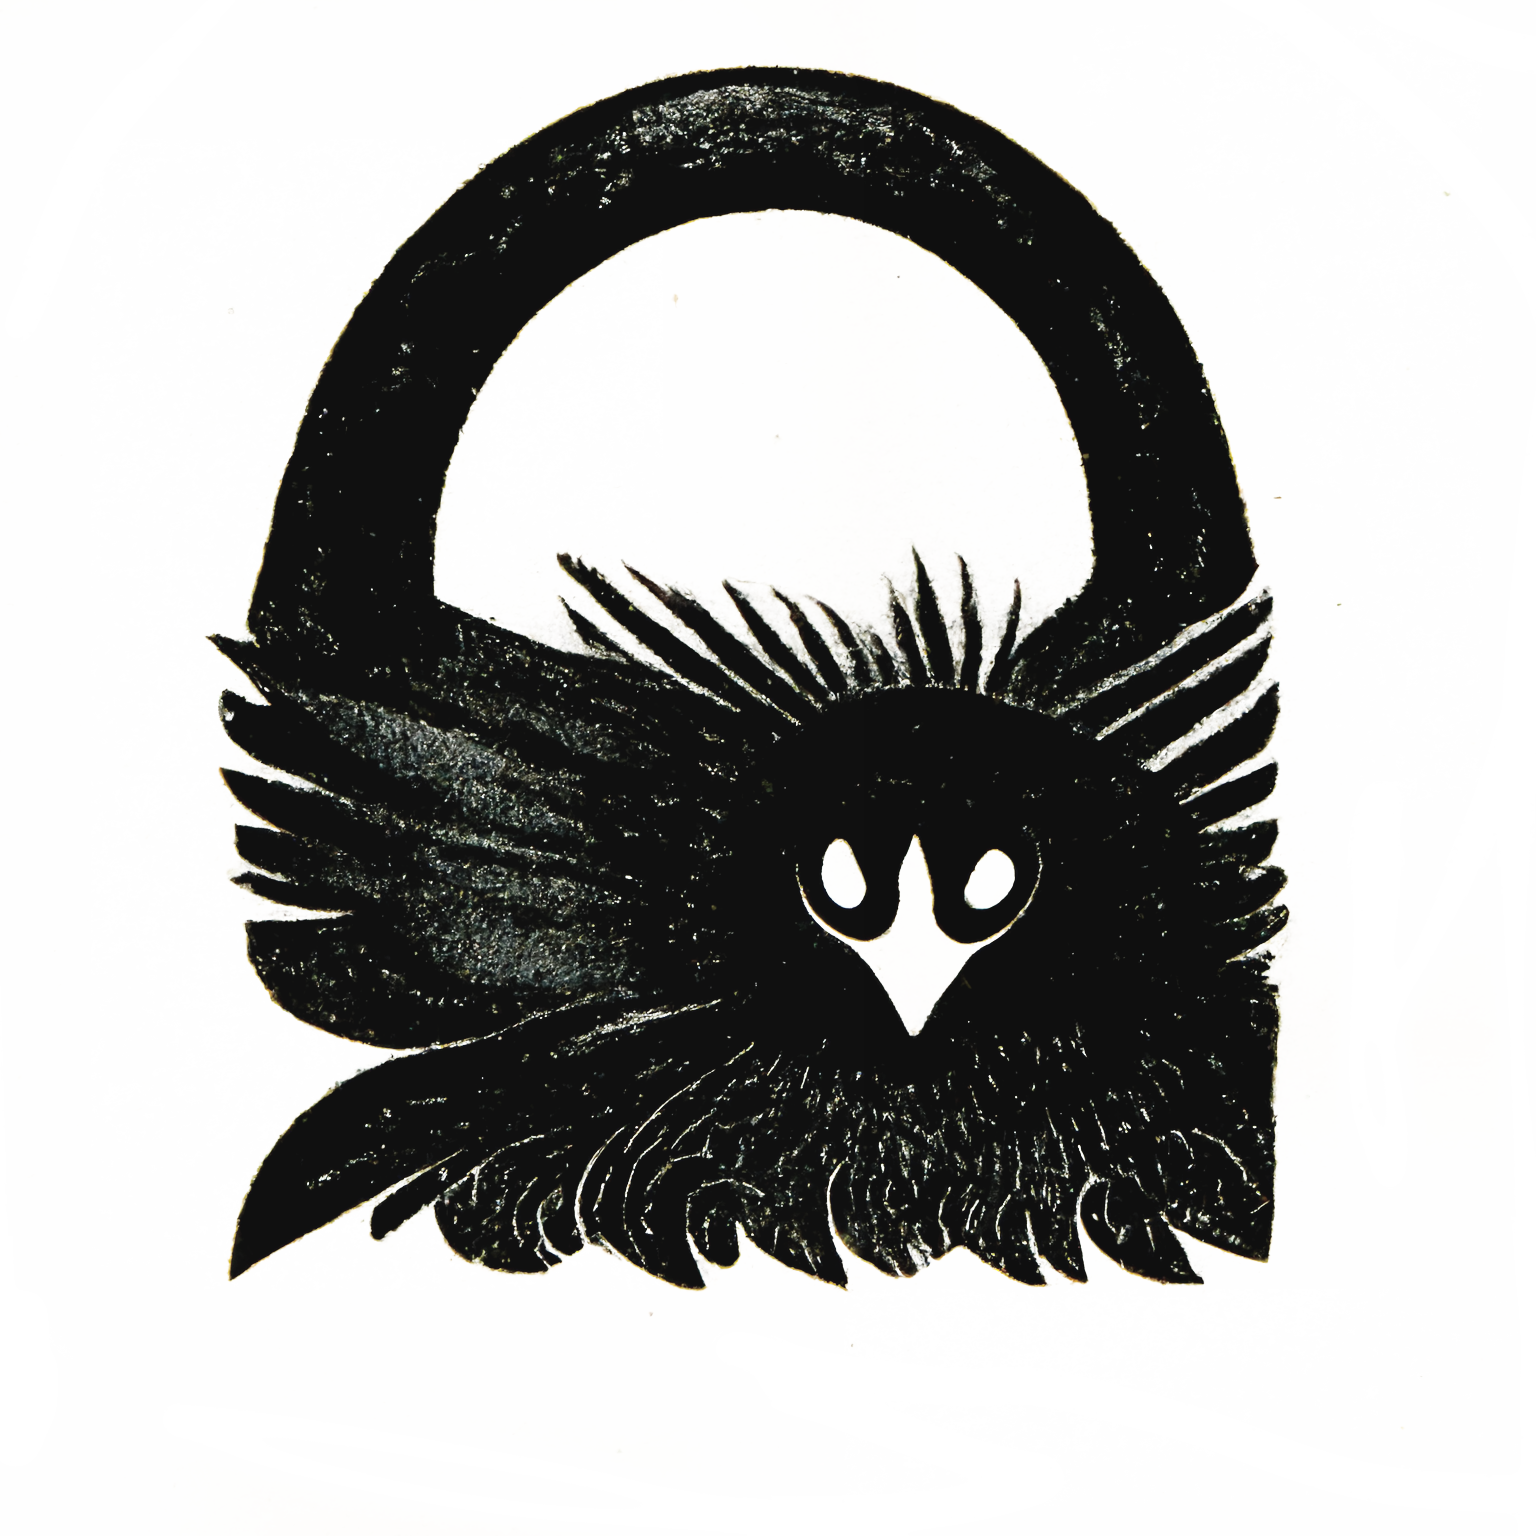 drawing of a padlock shaped like a raven